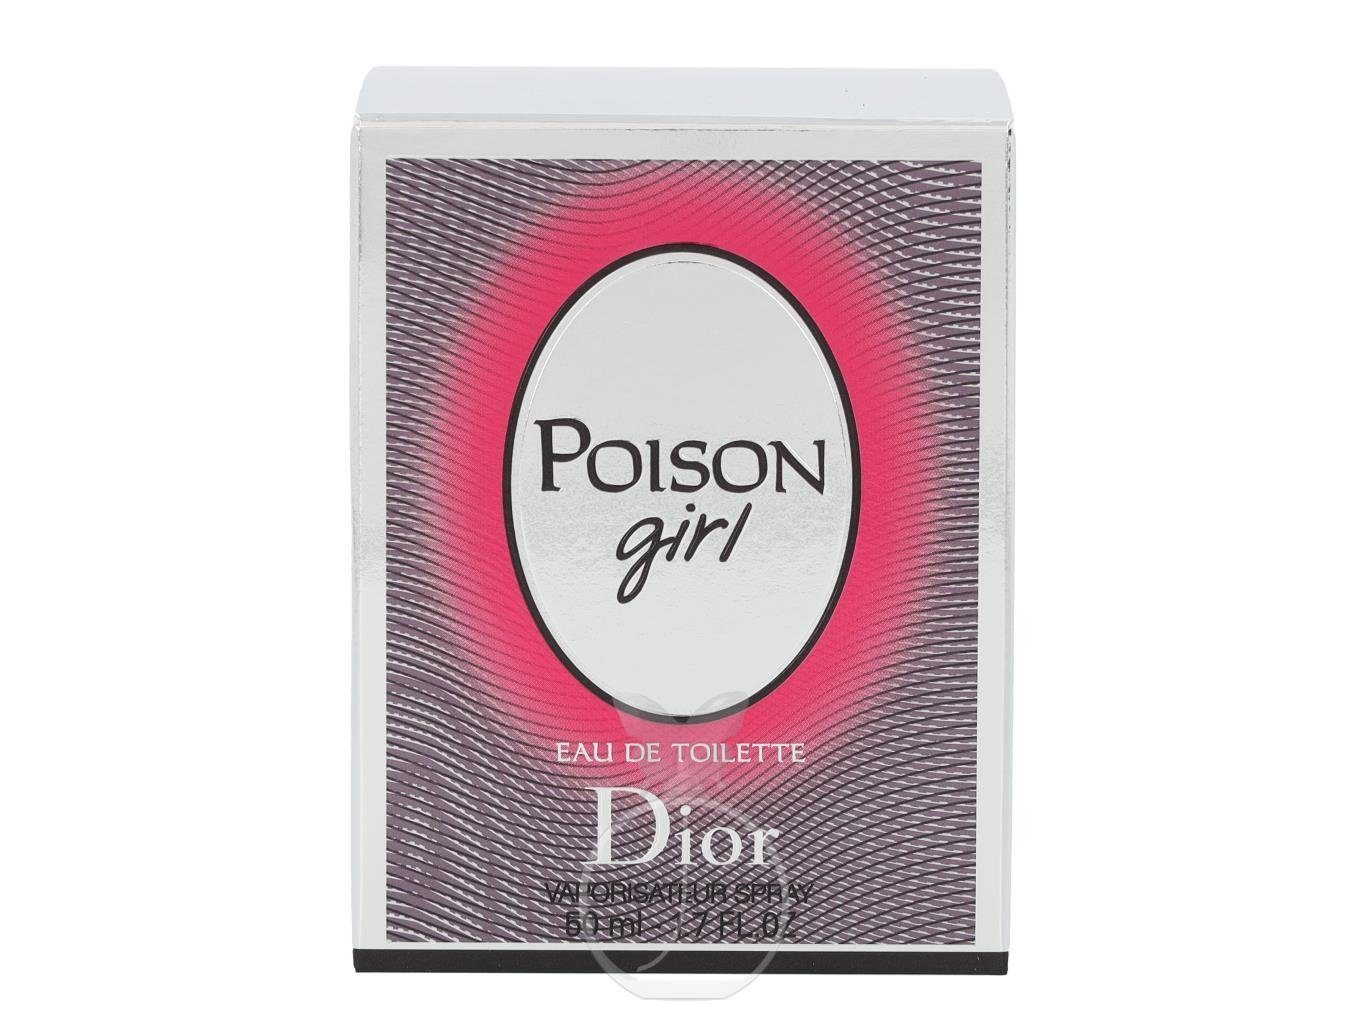 Dior Eau Toilette 1-tlg. Girl de 50 de ml, Poison Eau Toilette Dior